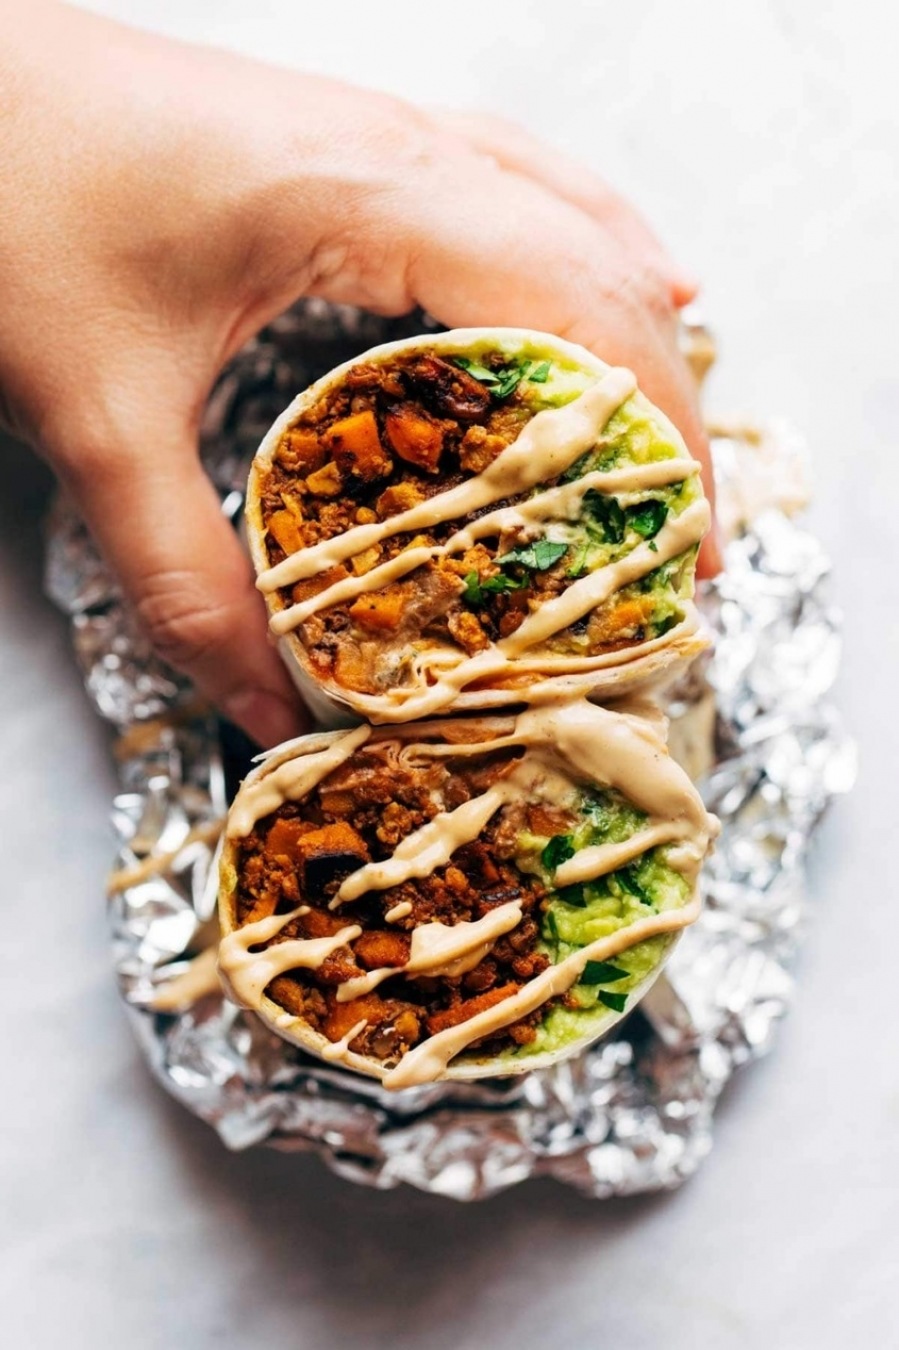 Meet the FoodTruck - Build a Burrito